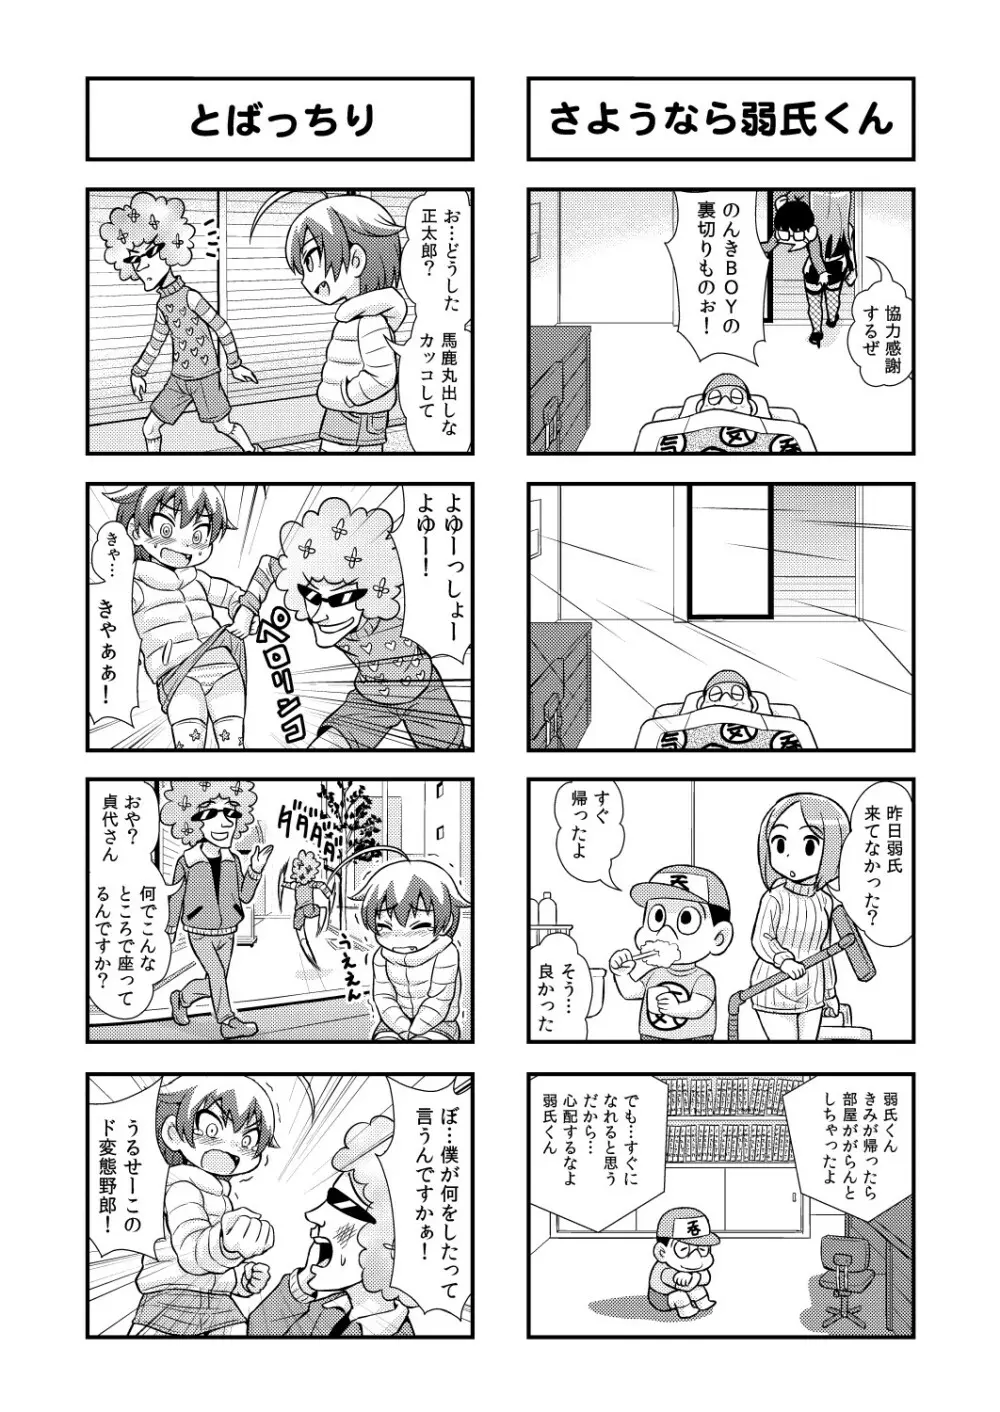 のんきBOY 1-39 50ページ